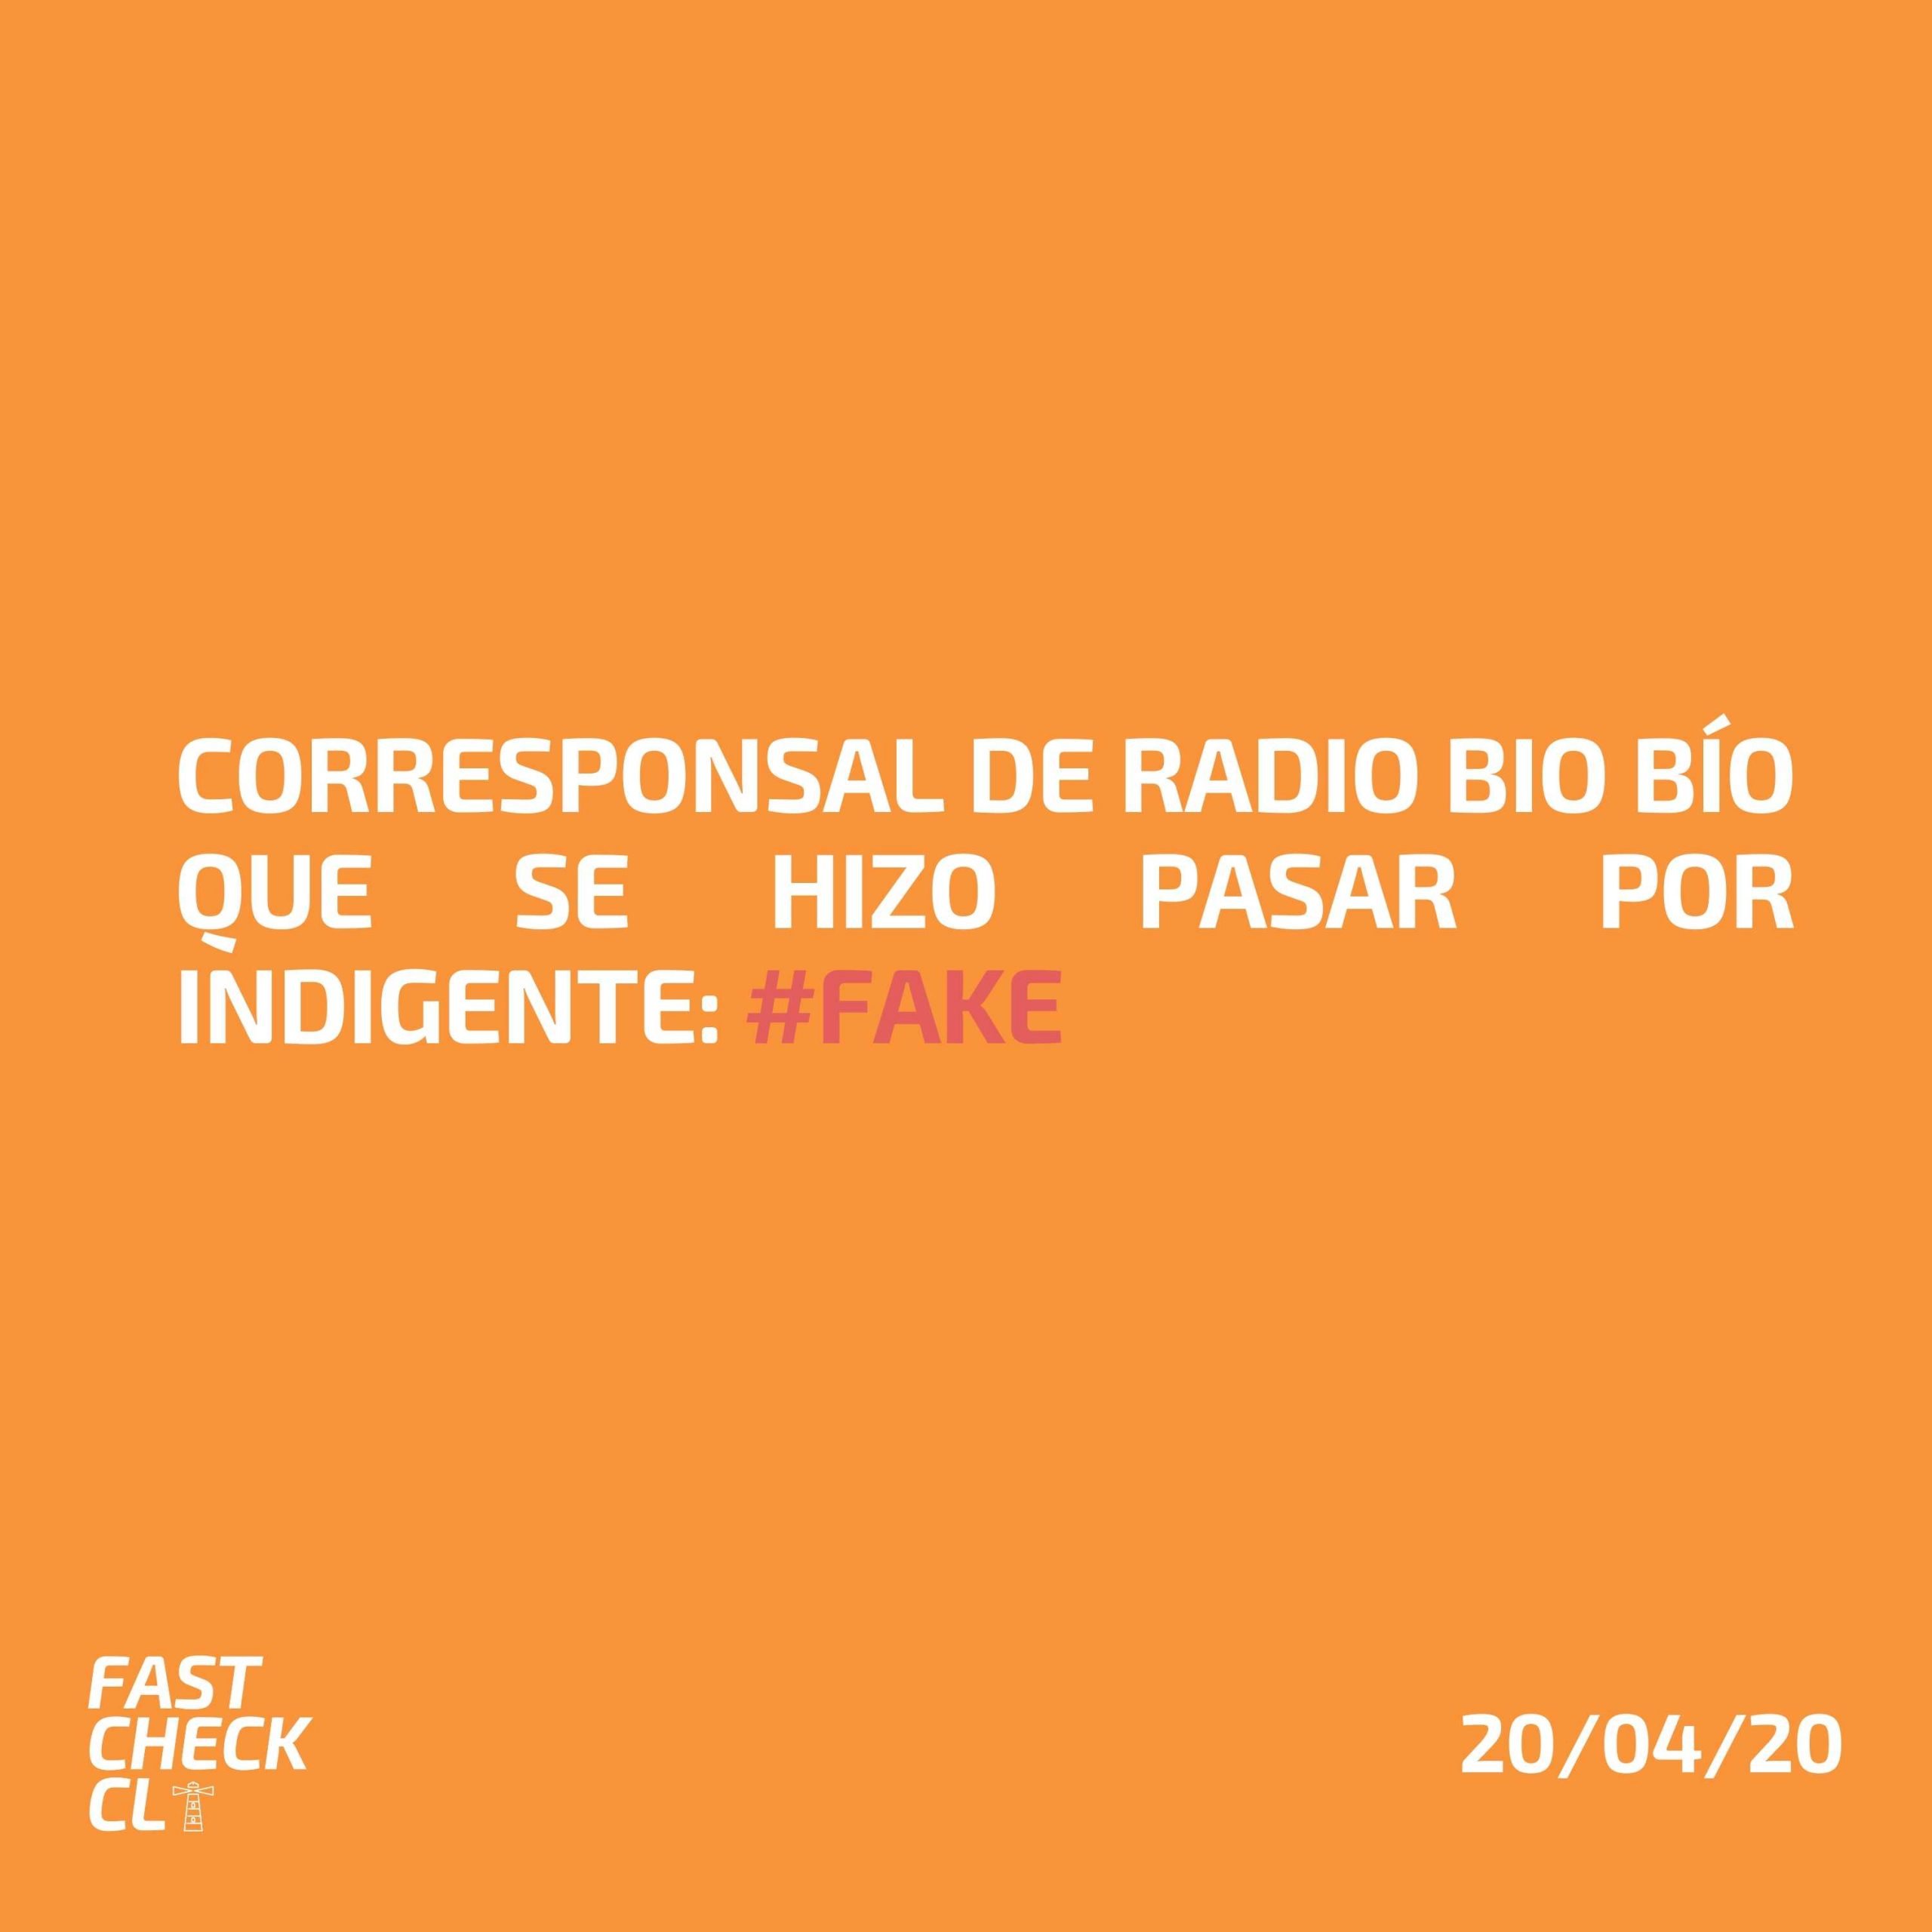 You are currently viewing Corresponsal de Radio Bio Bío que se hizo pasar por indigente: #Fake